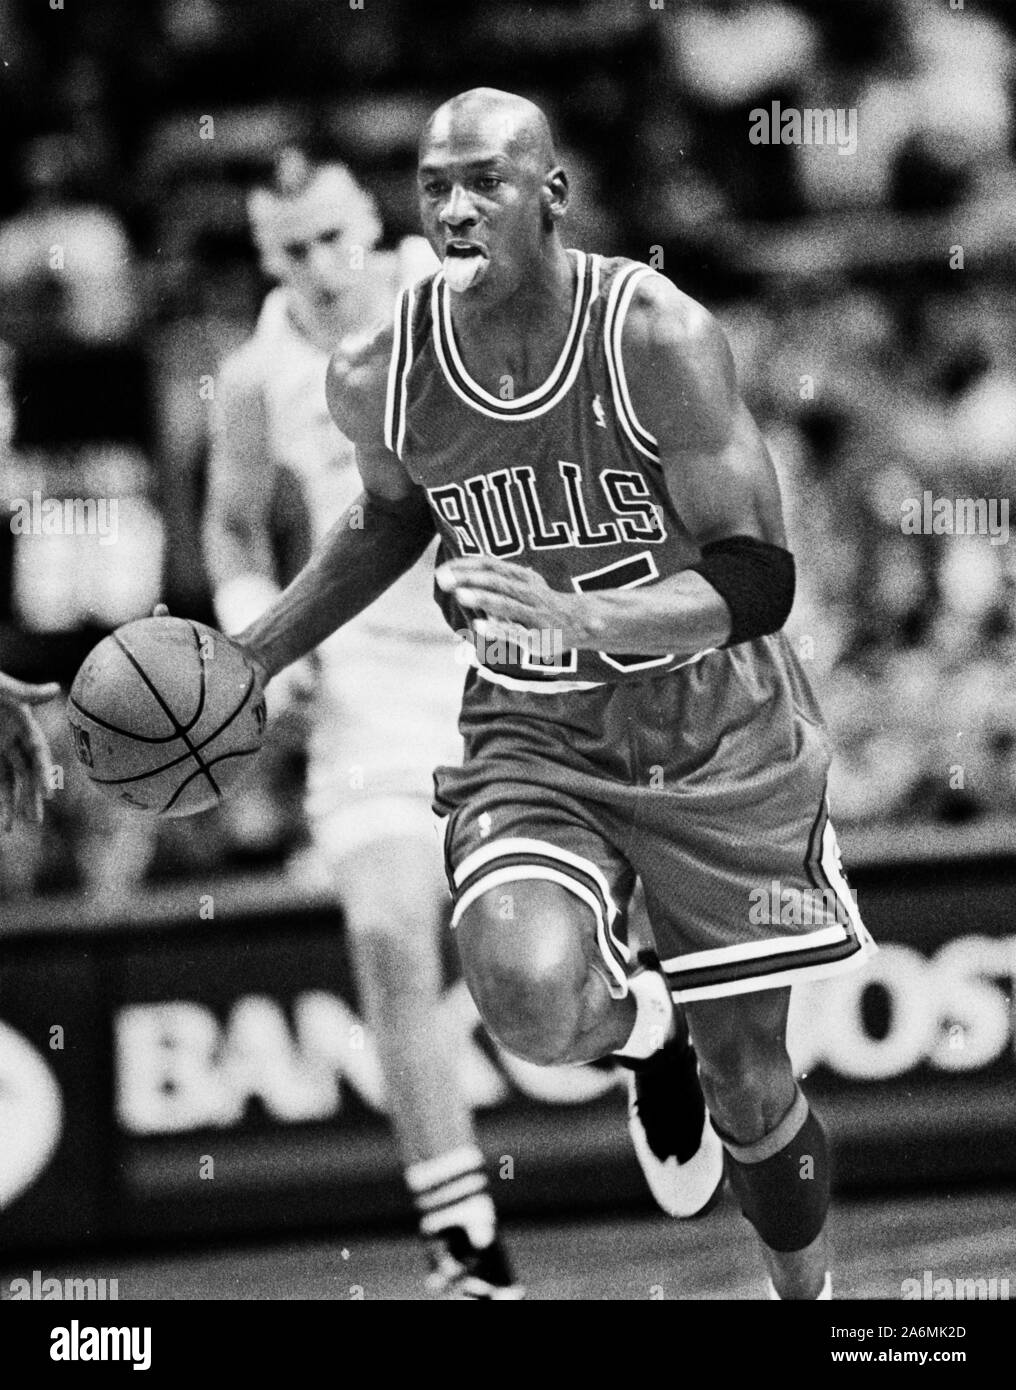 Michael Jordan, Chicago Bulls get real in 10-part docuseries - QCity Metro